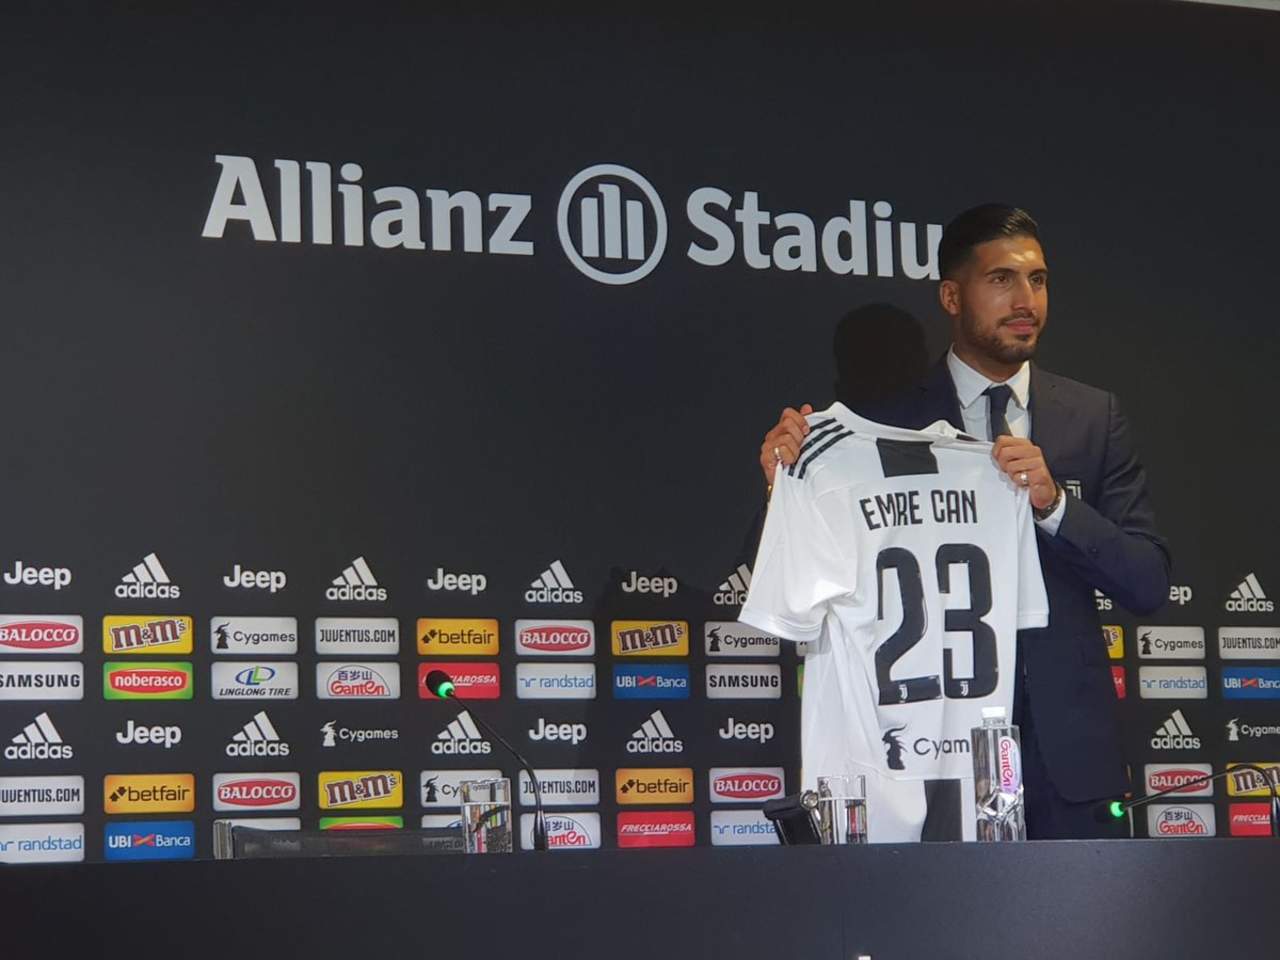 La presentación del nuevo número “23” de la “vecchia signora” del Calcio italiano se llevó a cabo en las instalaciones de la Ciudad Deportiva de la Juventus, que se ubican al norte de Turín. (ESPECIAL)